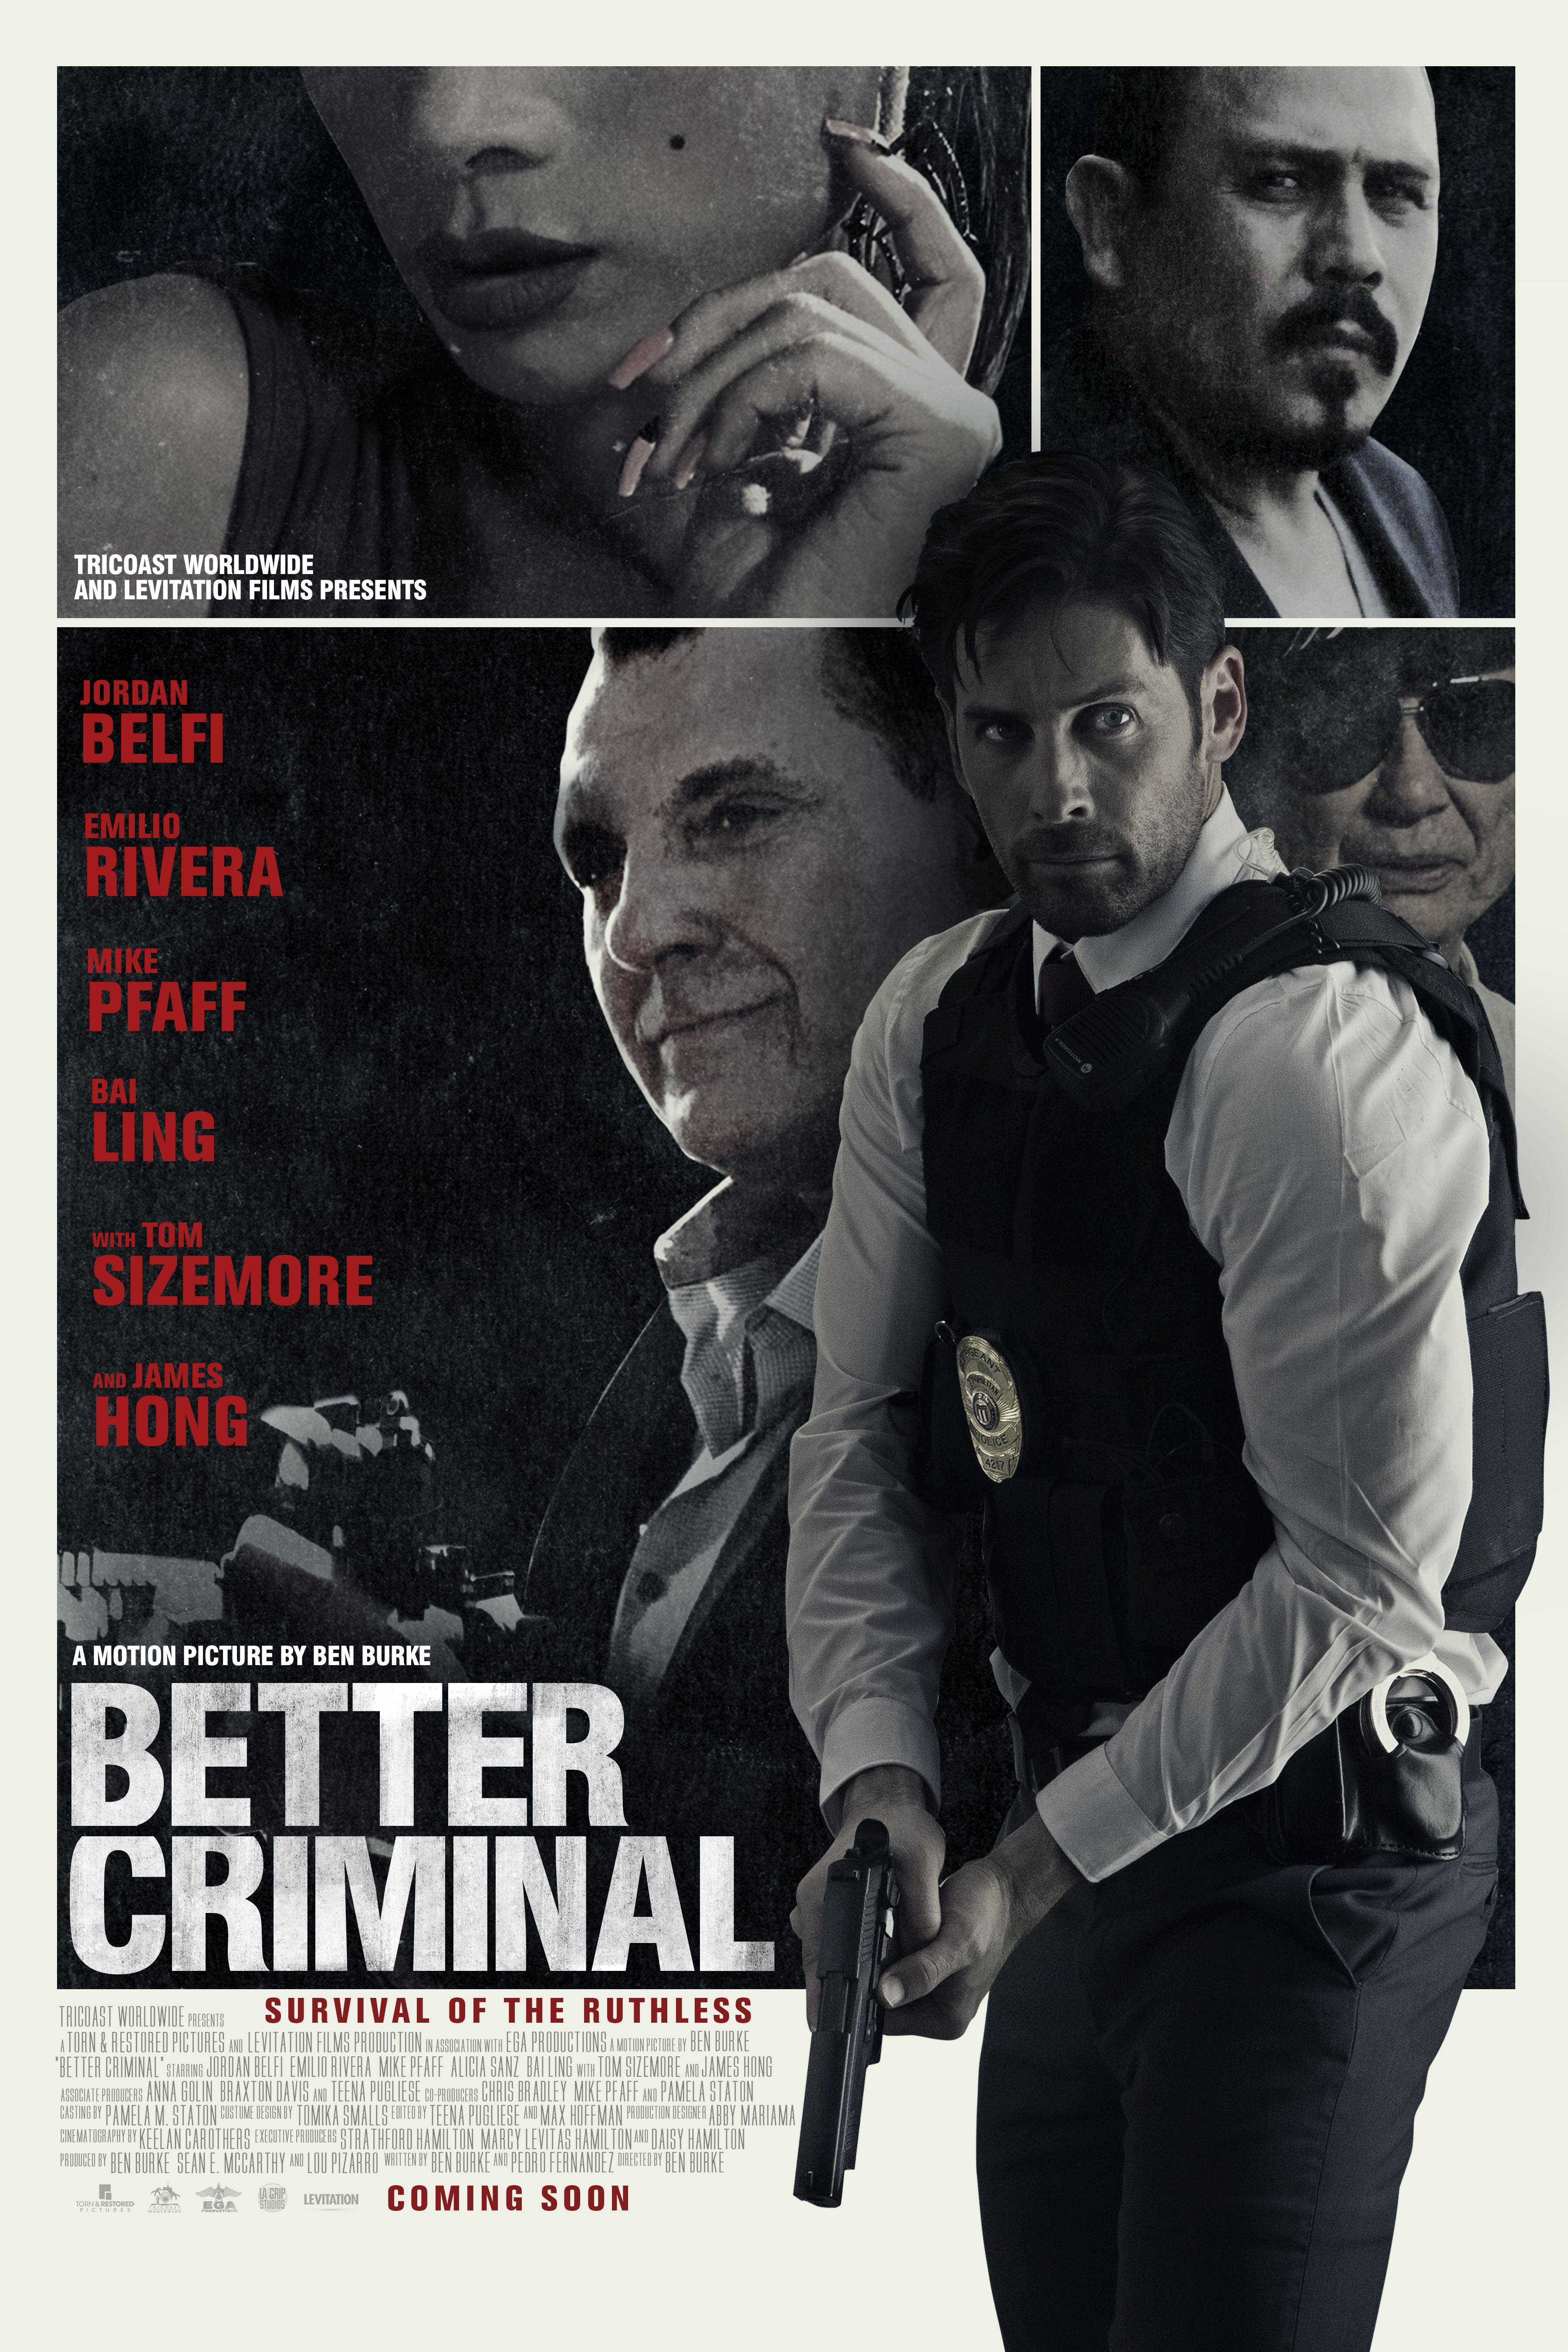 Nonton film Better Criminal layarkaca21 indoxx1 ganool online streaming terbaru